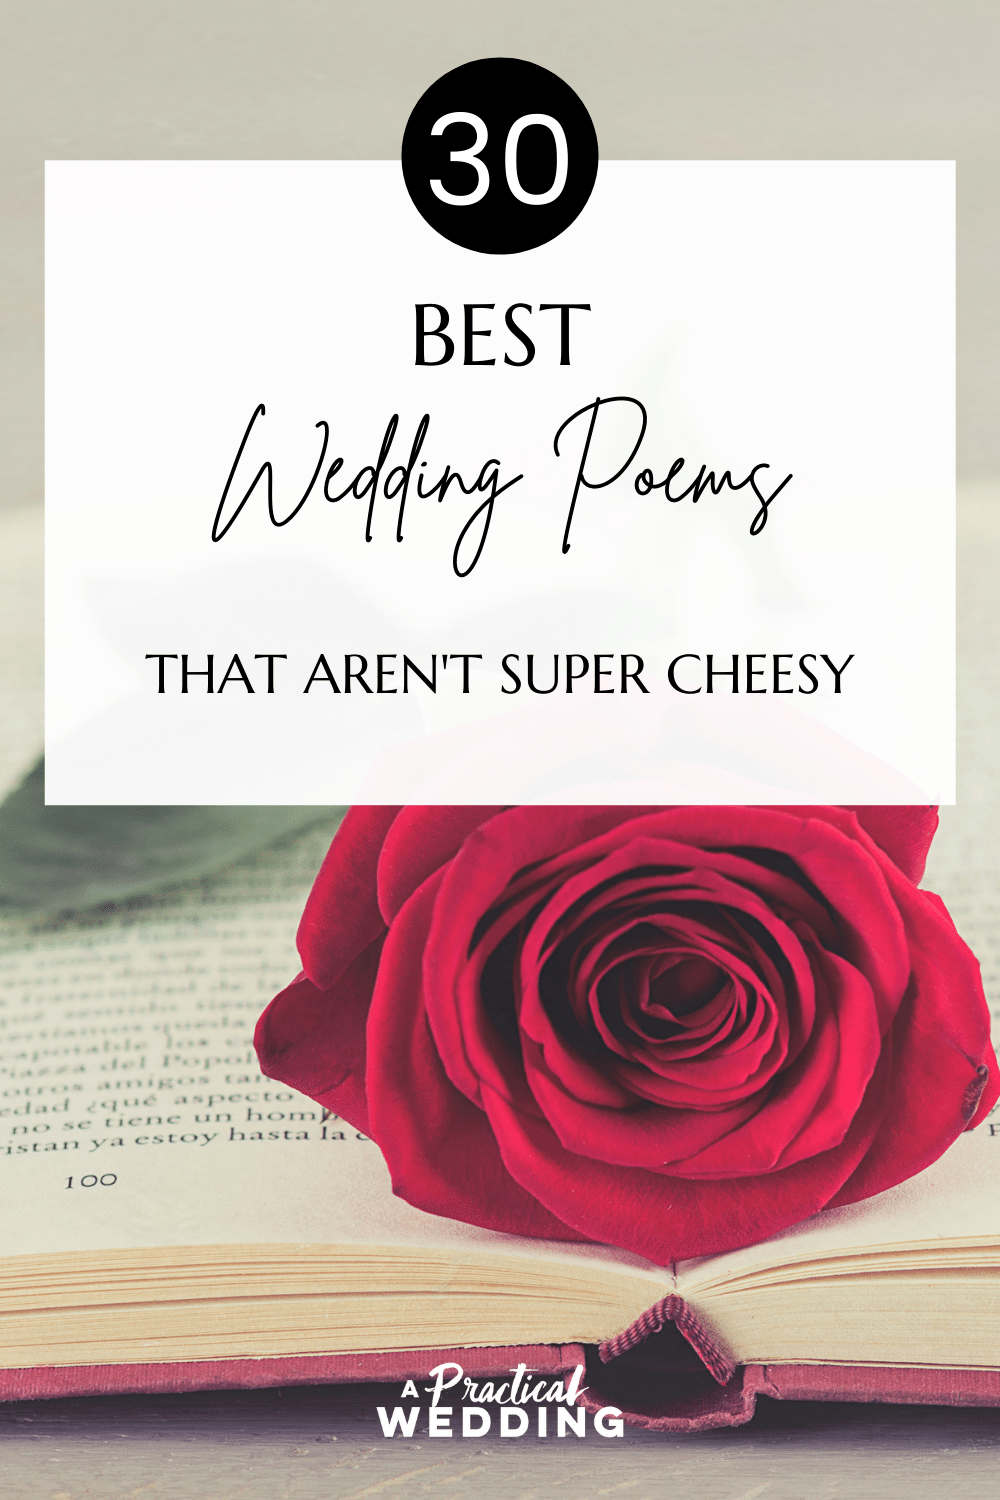 "30 Best Wedding Poems That Aren't Super Cheesy"